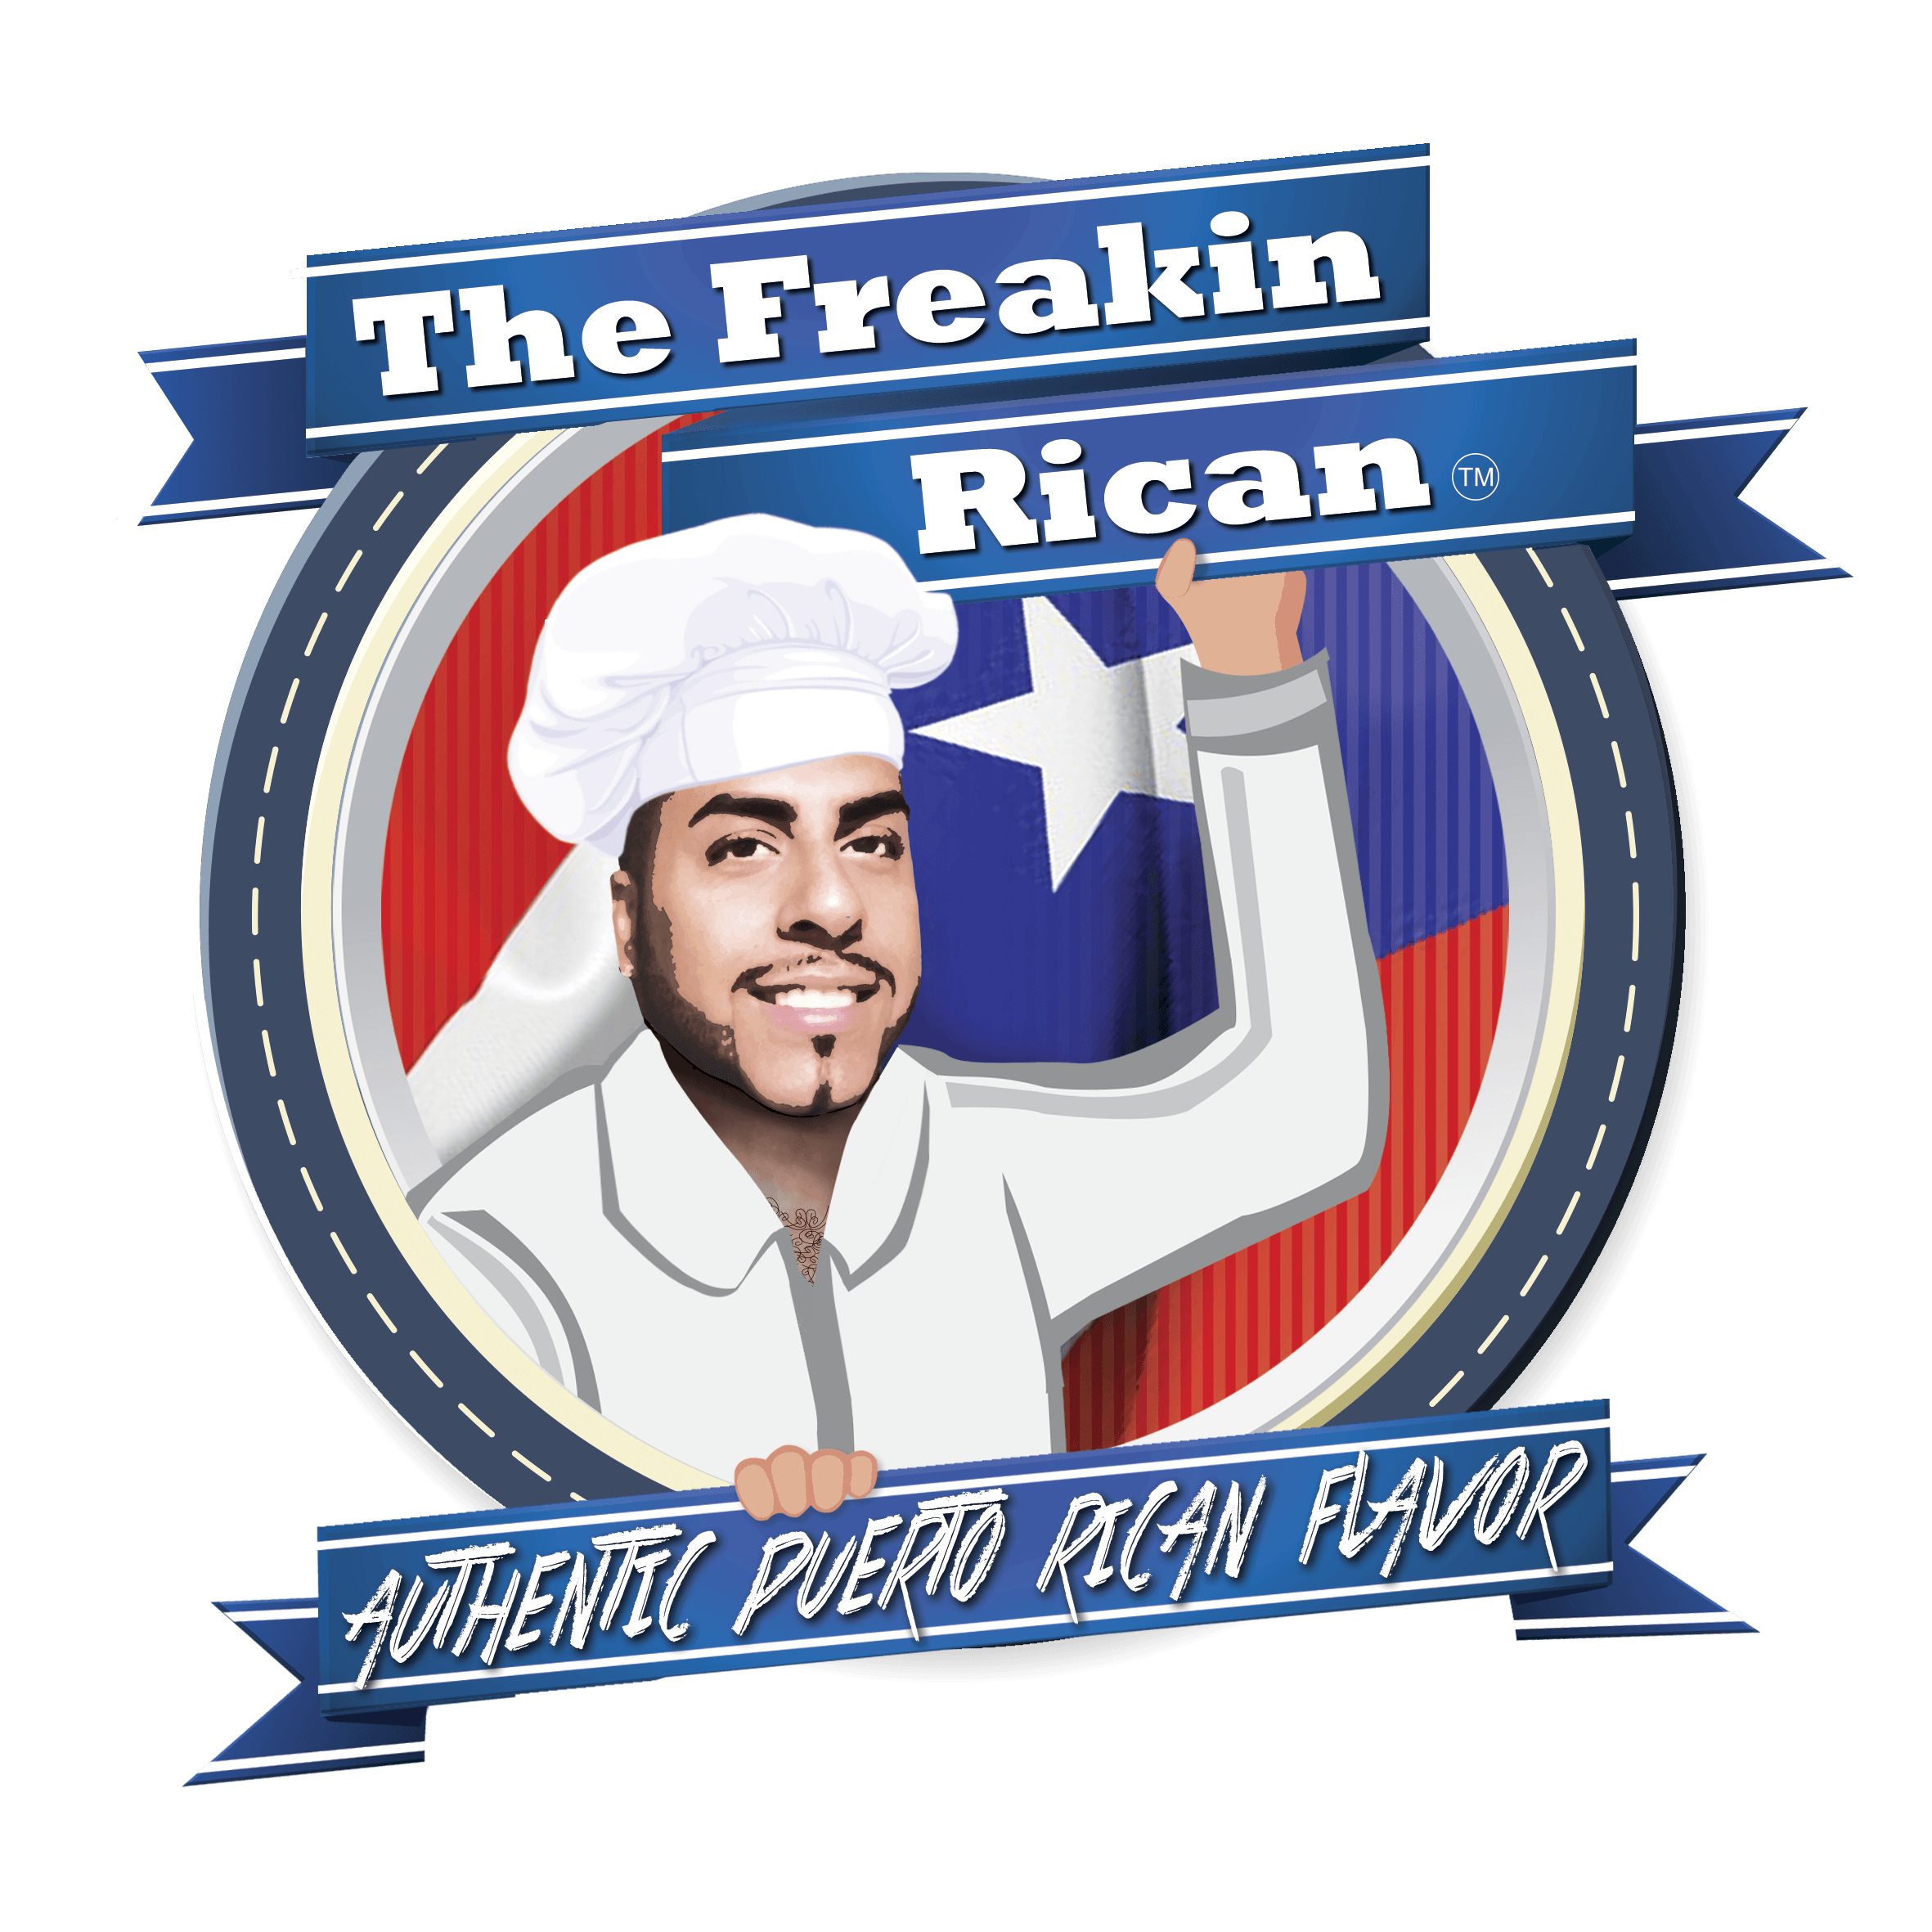 Puerto Rican Restaurants Logo - The Freakin Rican Restaurant – La vida es mejor con un buen sabor!